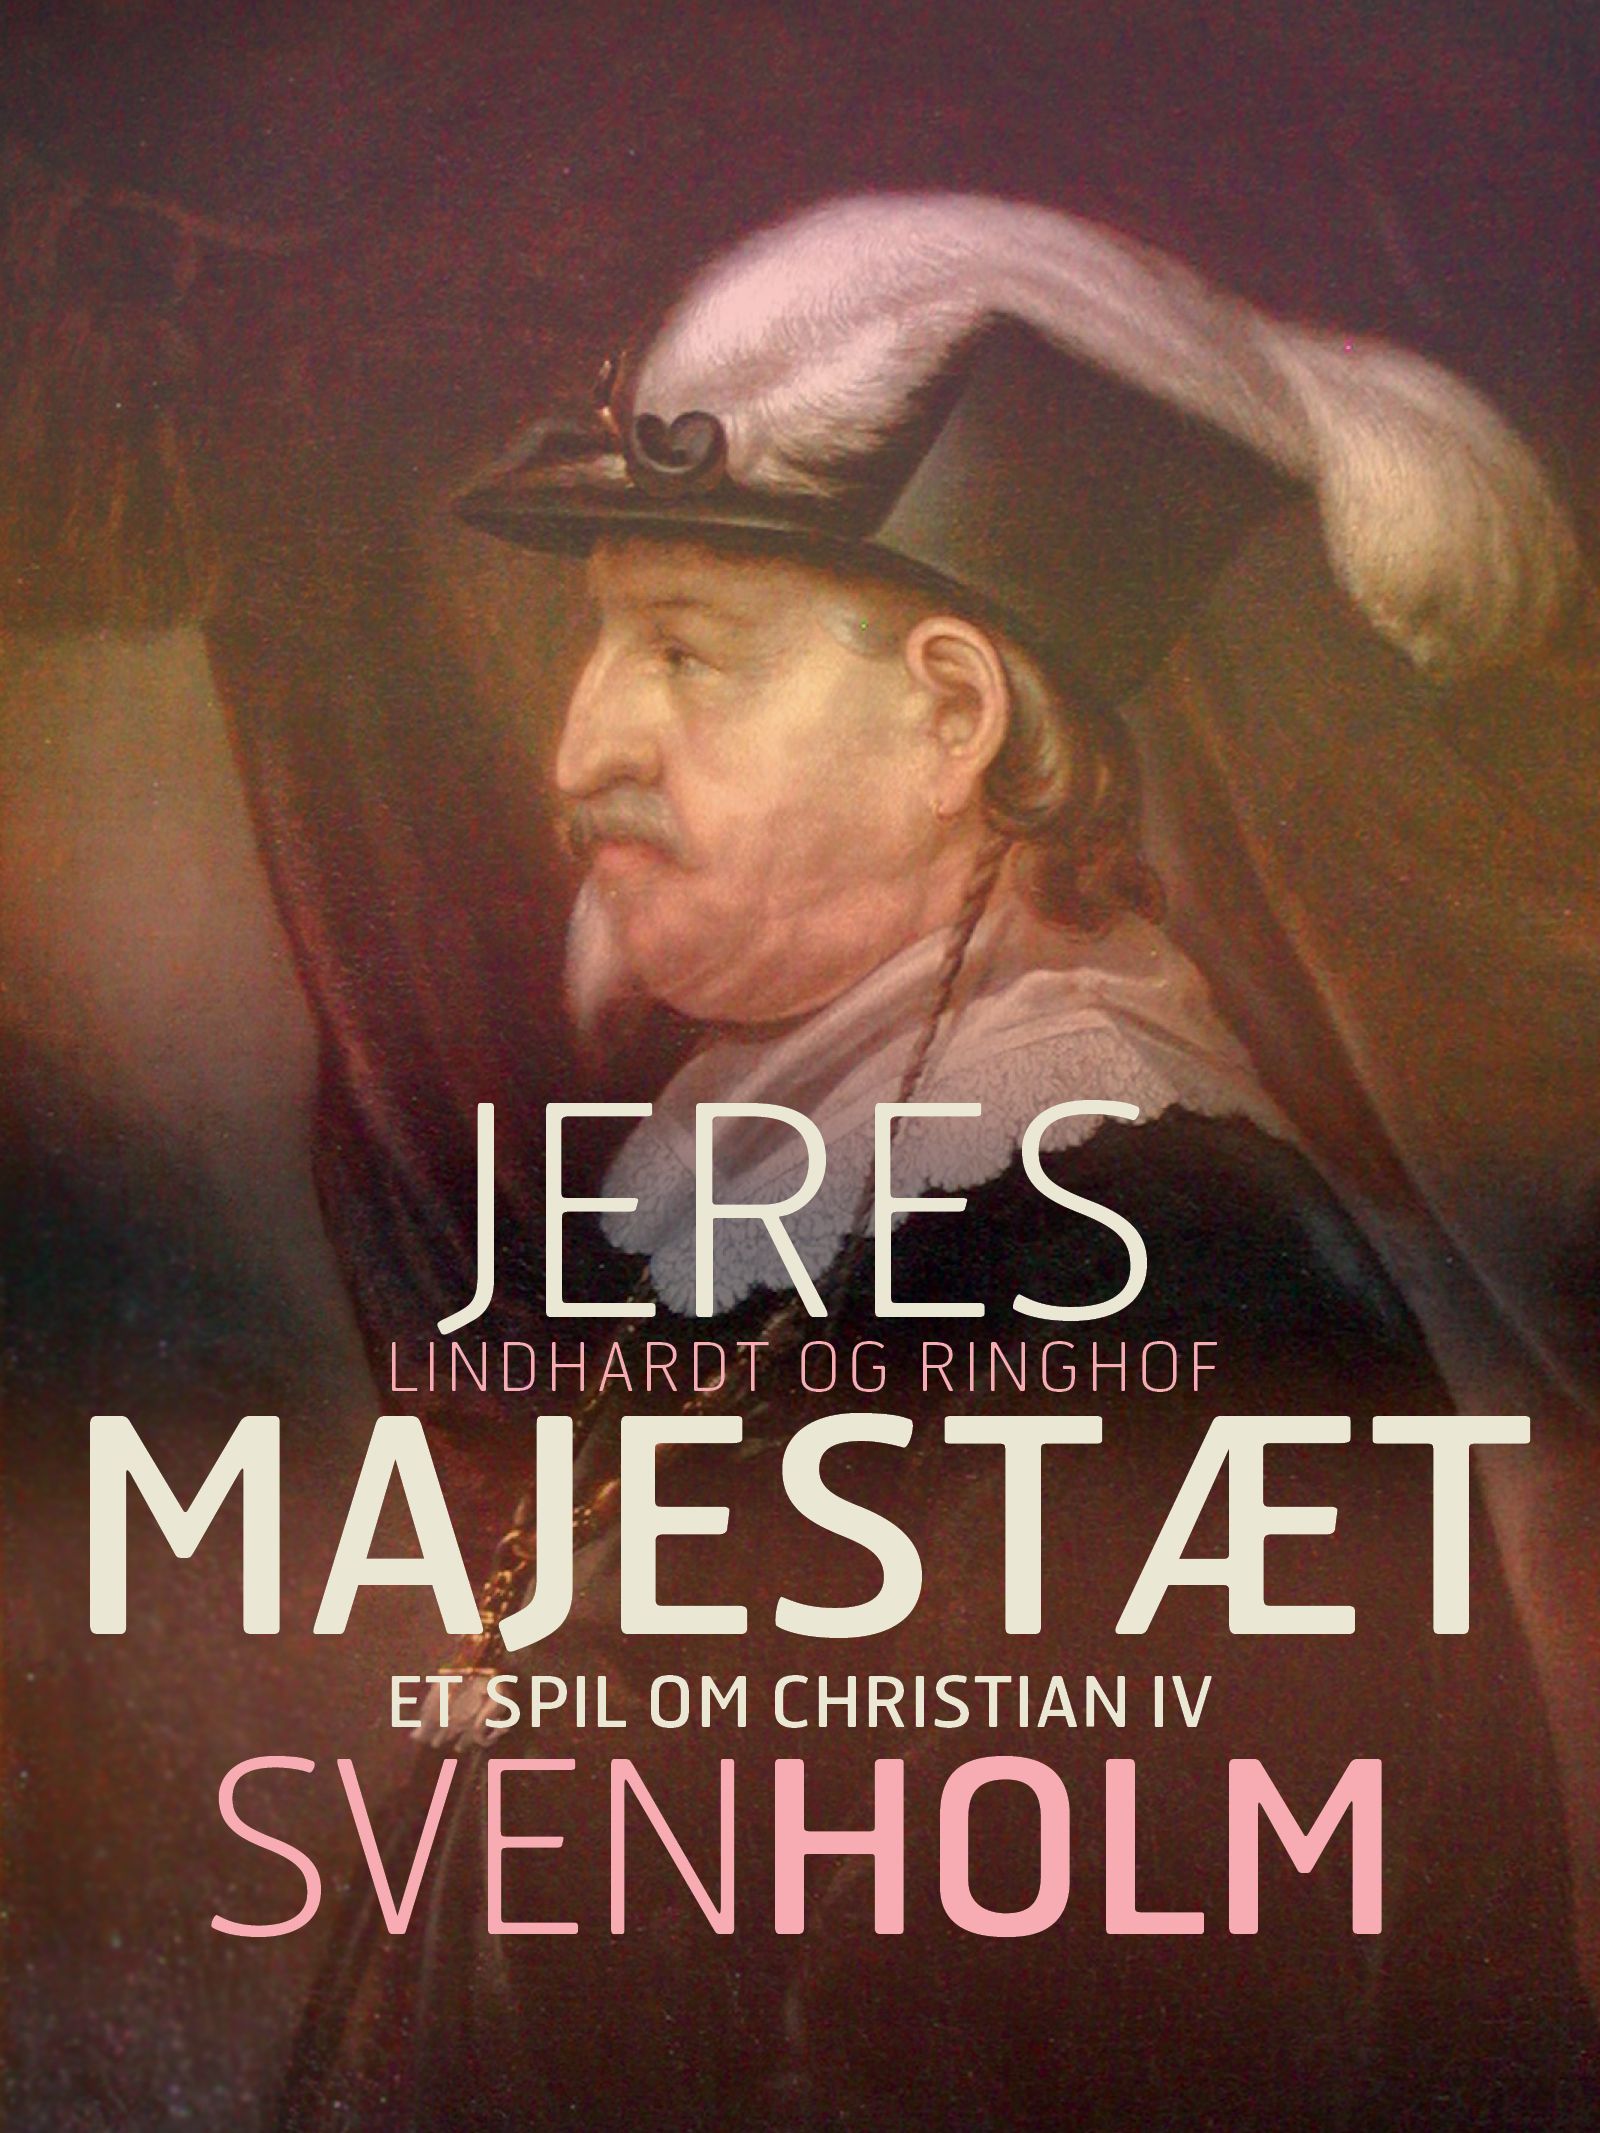 Jeres majestæt, e-bog af Sven Holm